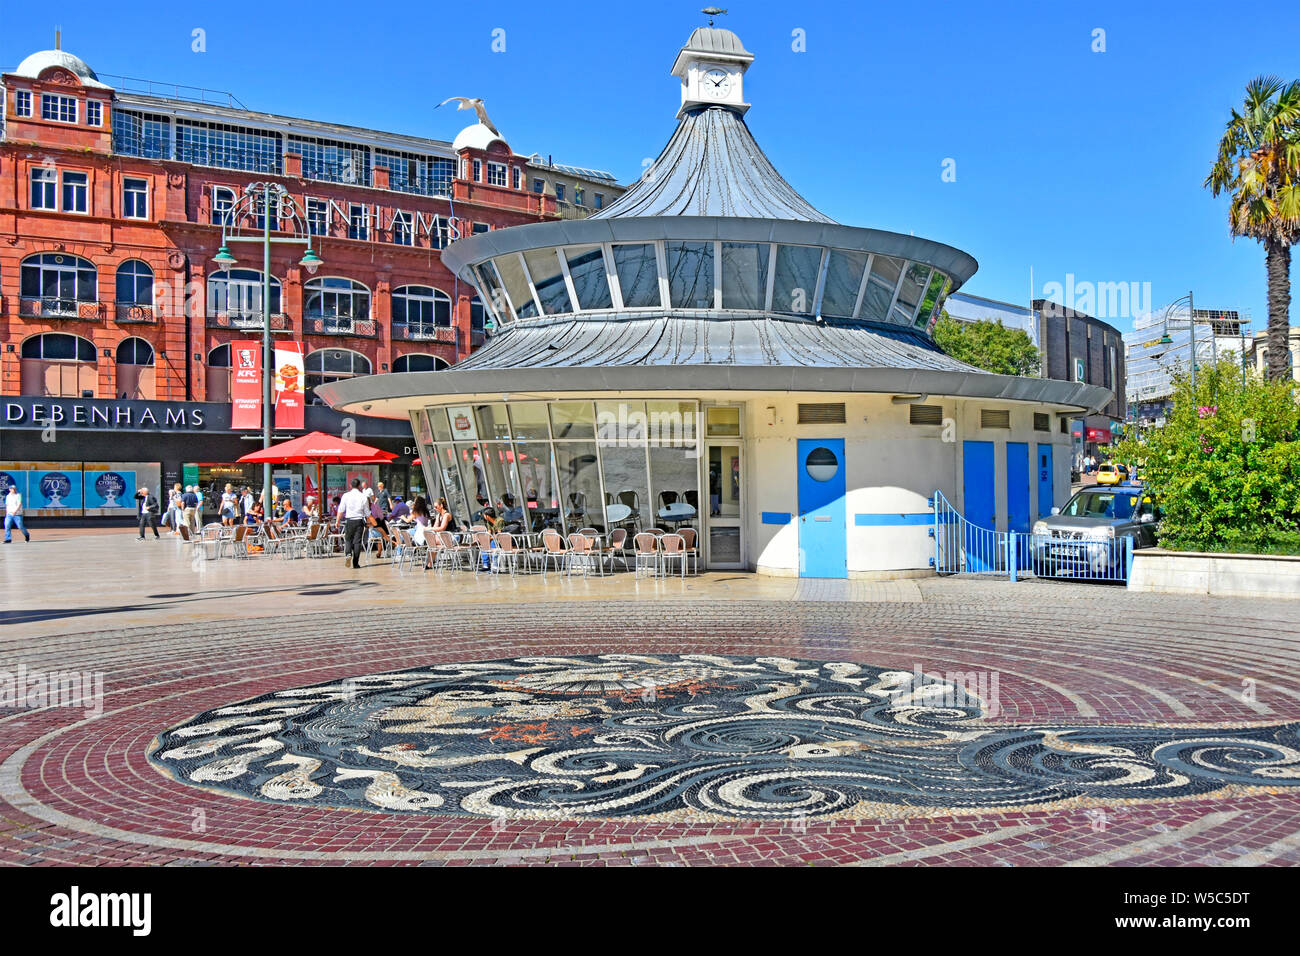 Le centre-ville de Bournemouth et carrés en mosaïque de galets avec la chaussée magasin Debenhams & des gens assis à l'extérieur à l'Obscura street cafe Dorset England UK Banque D'Images